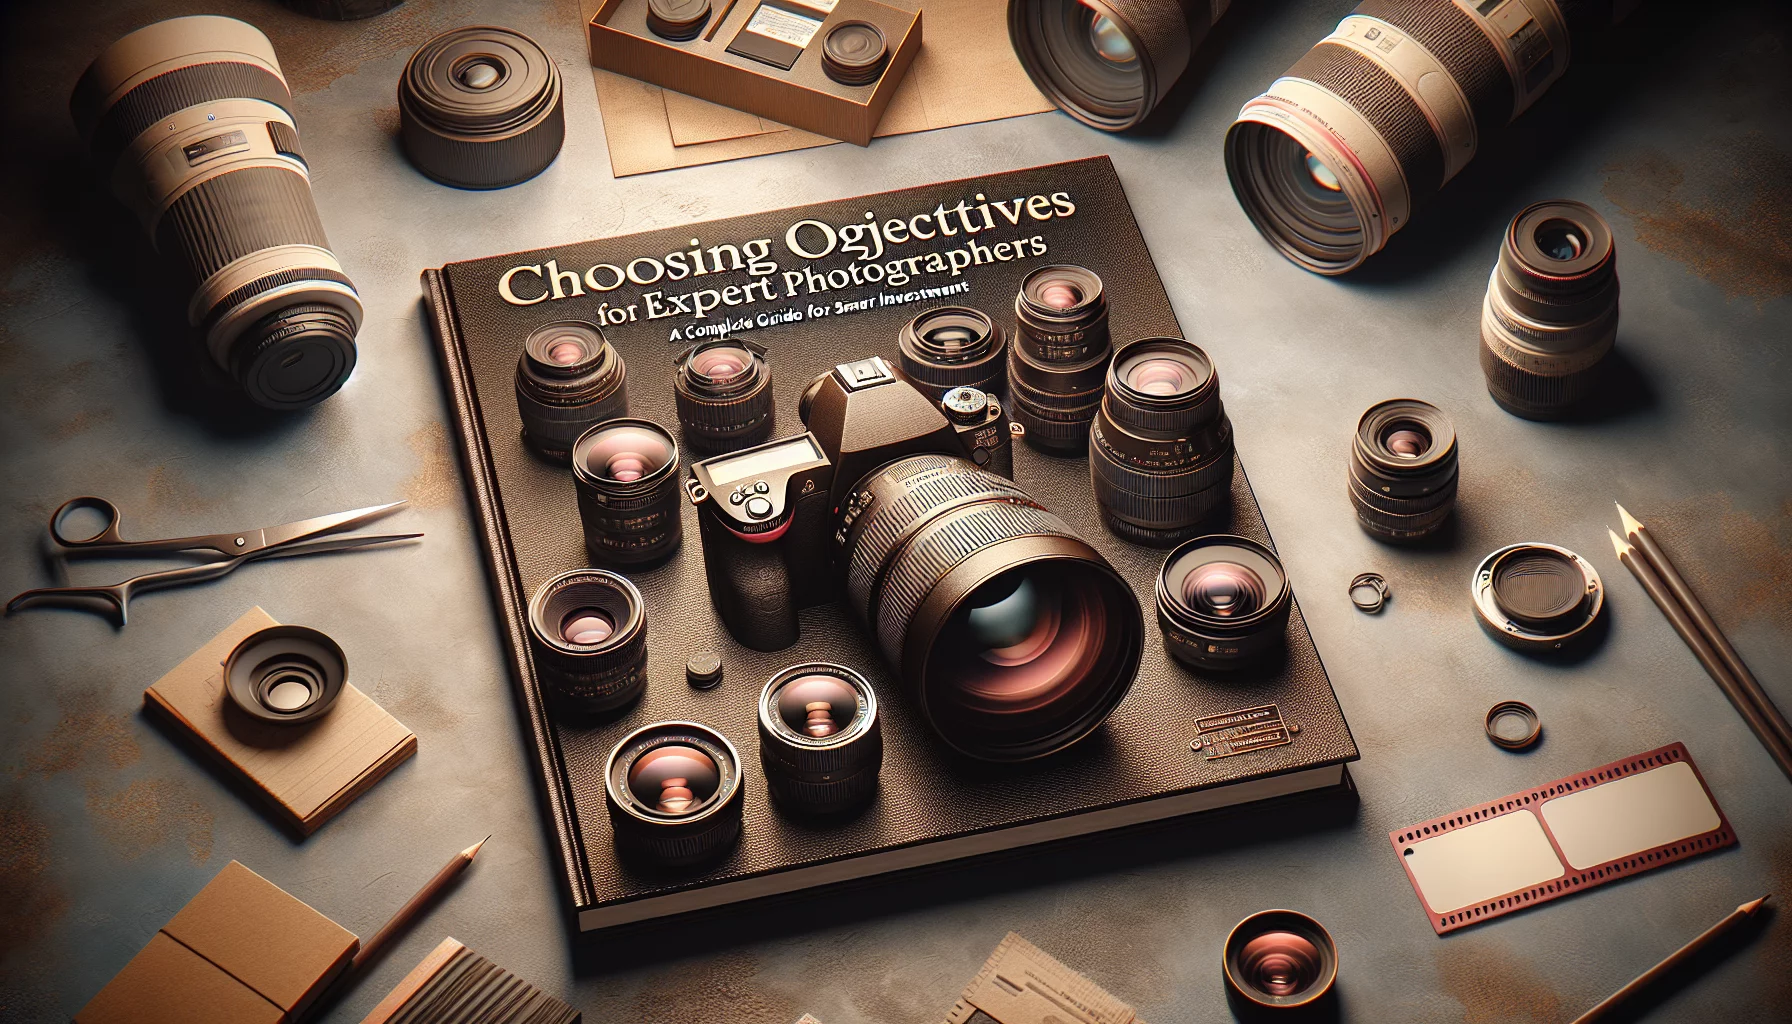 Choix d'Objectifs pour Photographes Experts : Guide Complet pour Investir Intelligemment
